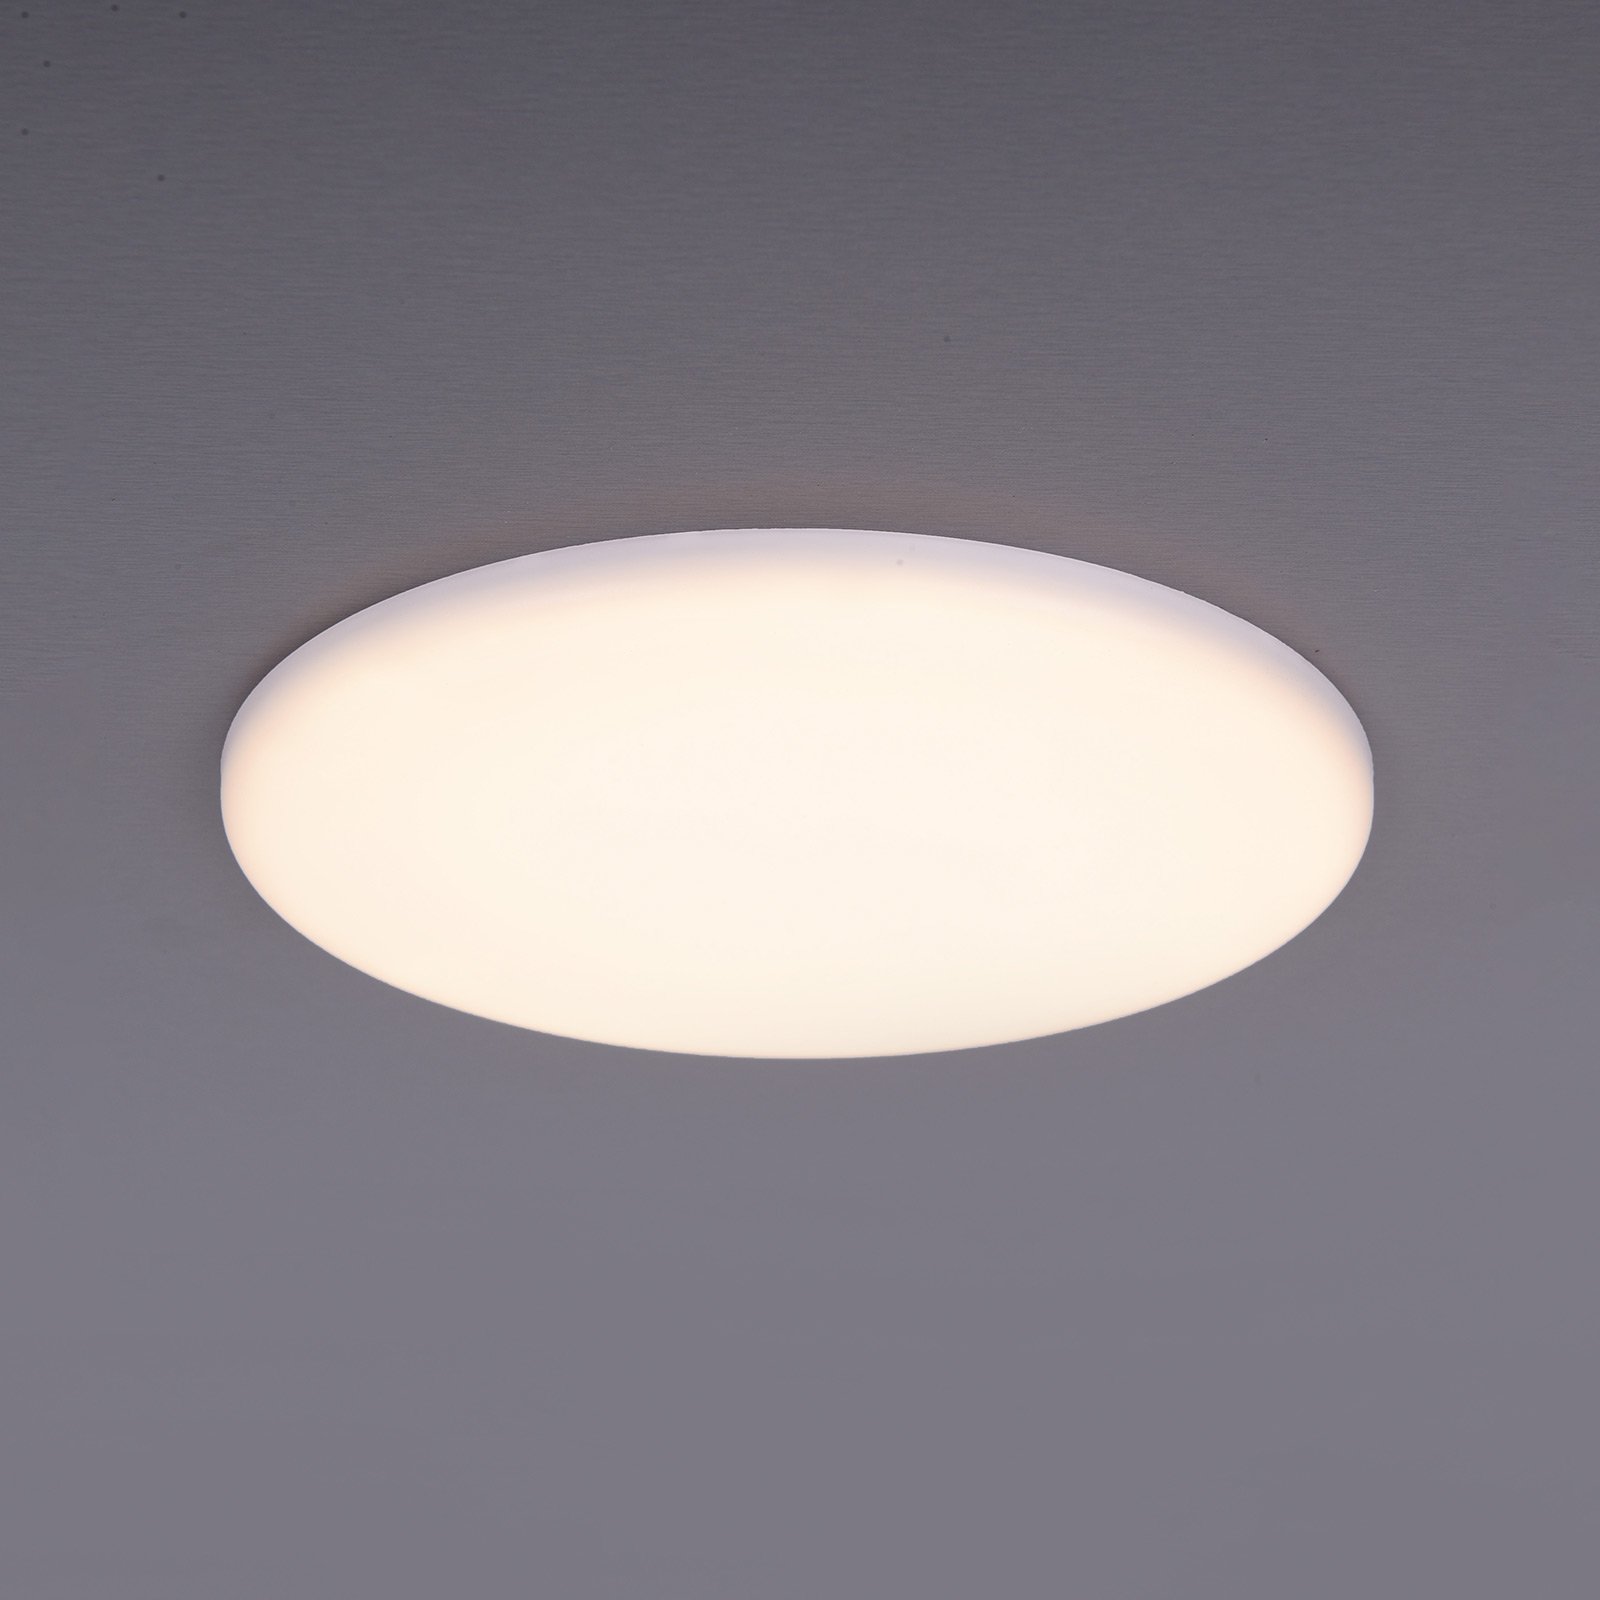 LED-Einbauleuchte Sula, rund, IP66, Ø 15,5 cm